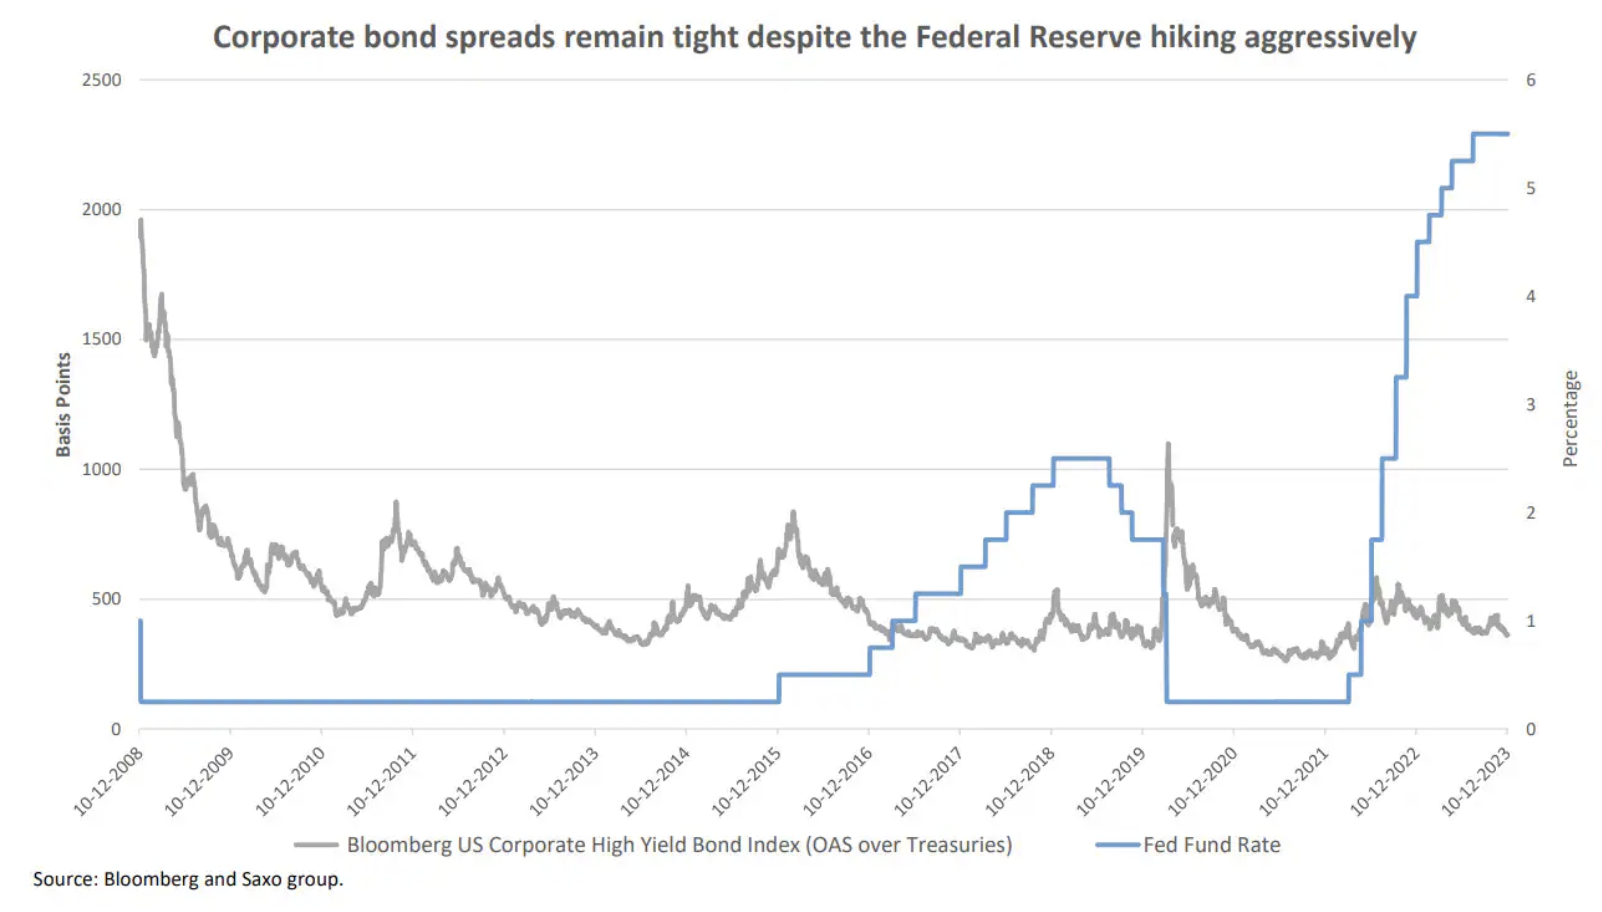 2 corporate bond spreads